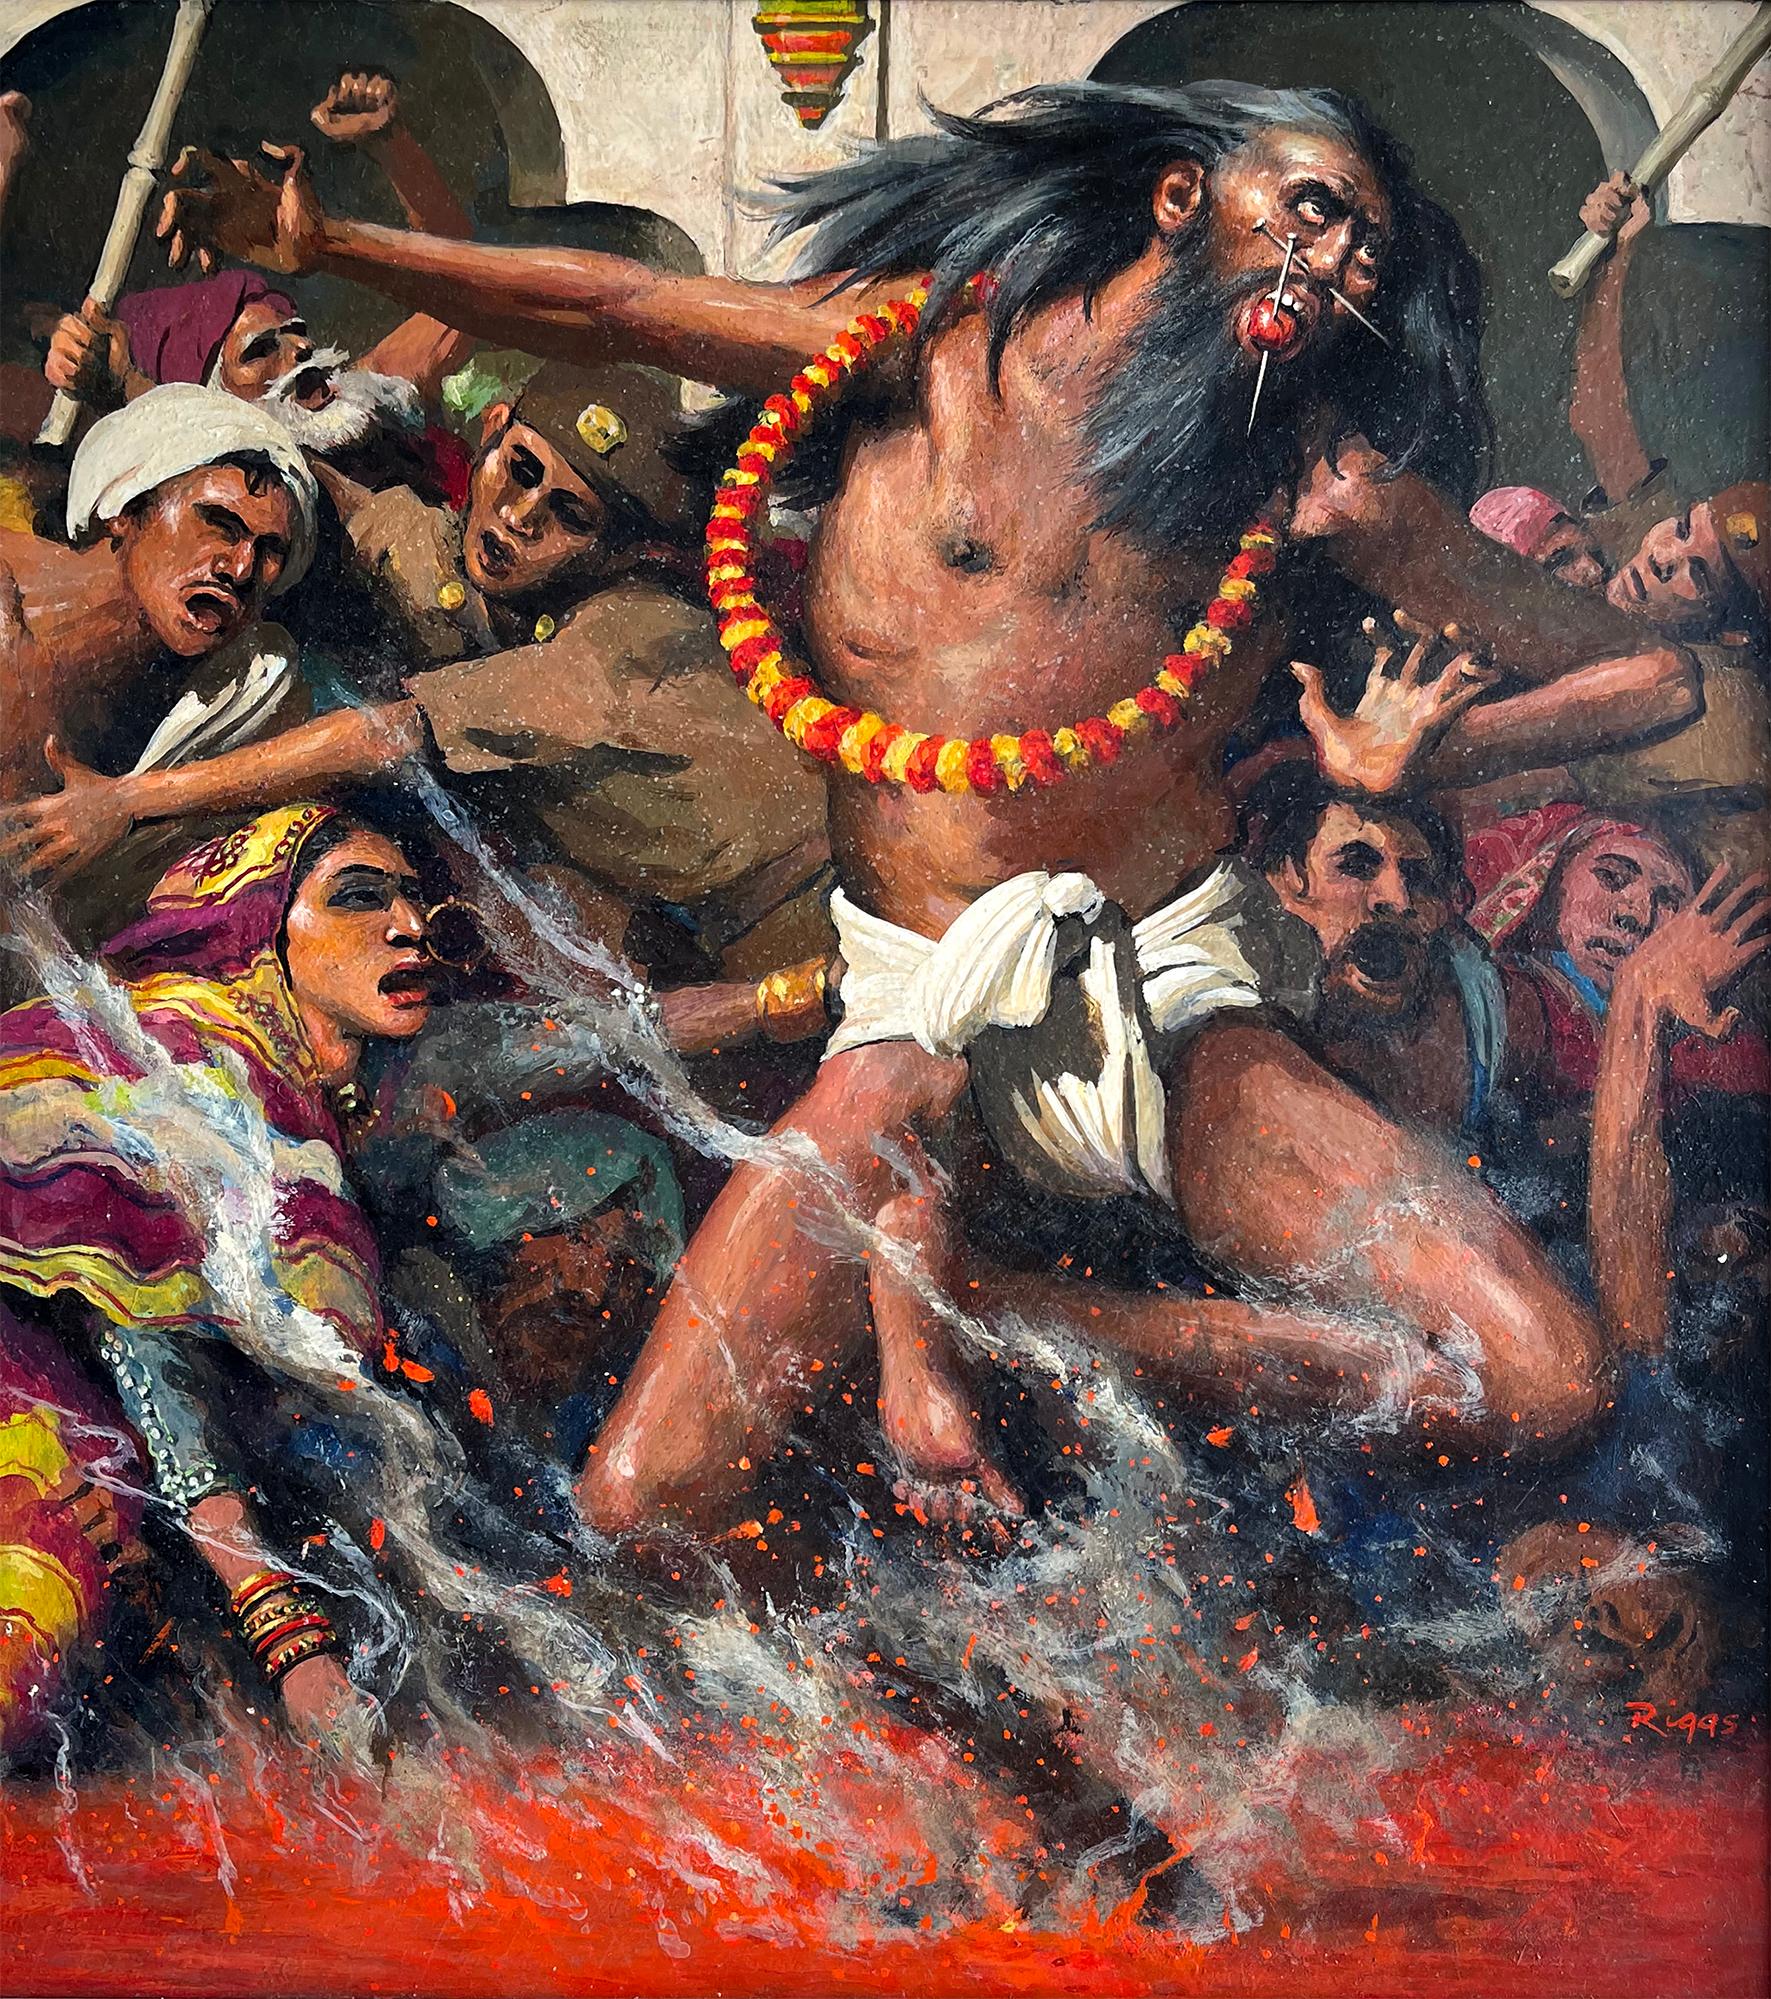 Figurative Painting Robert Riggs - Rituel indien  Marcher sur le feu,  Cérémonie de la marche sur le feu,  Mythologie et religion